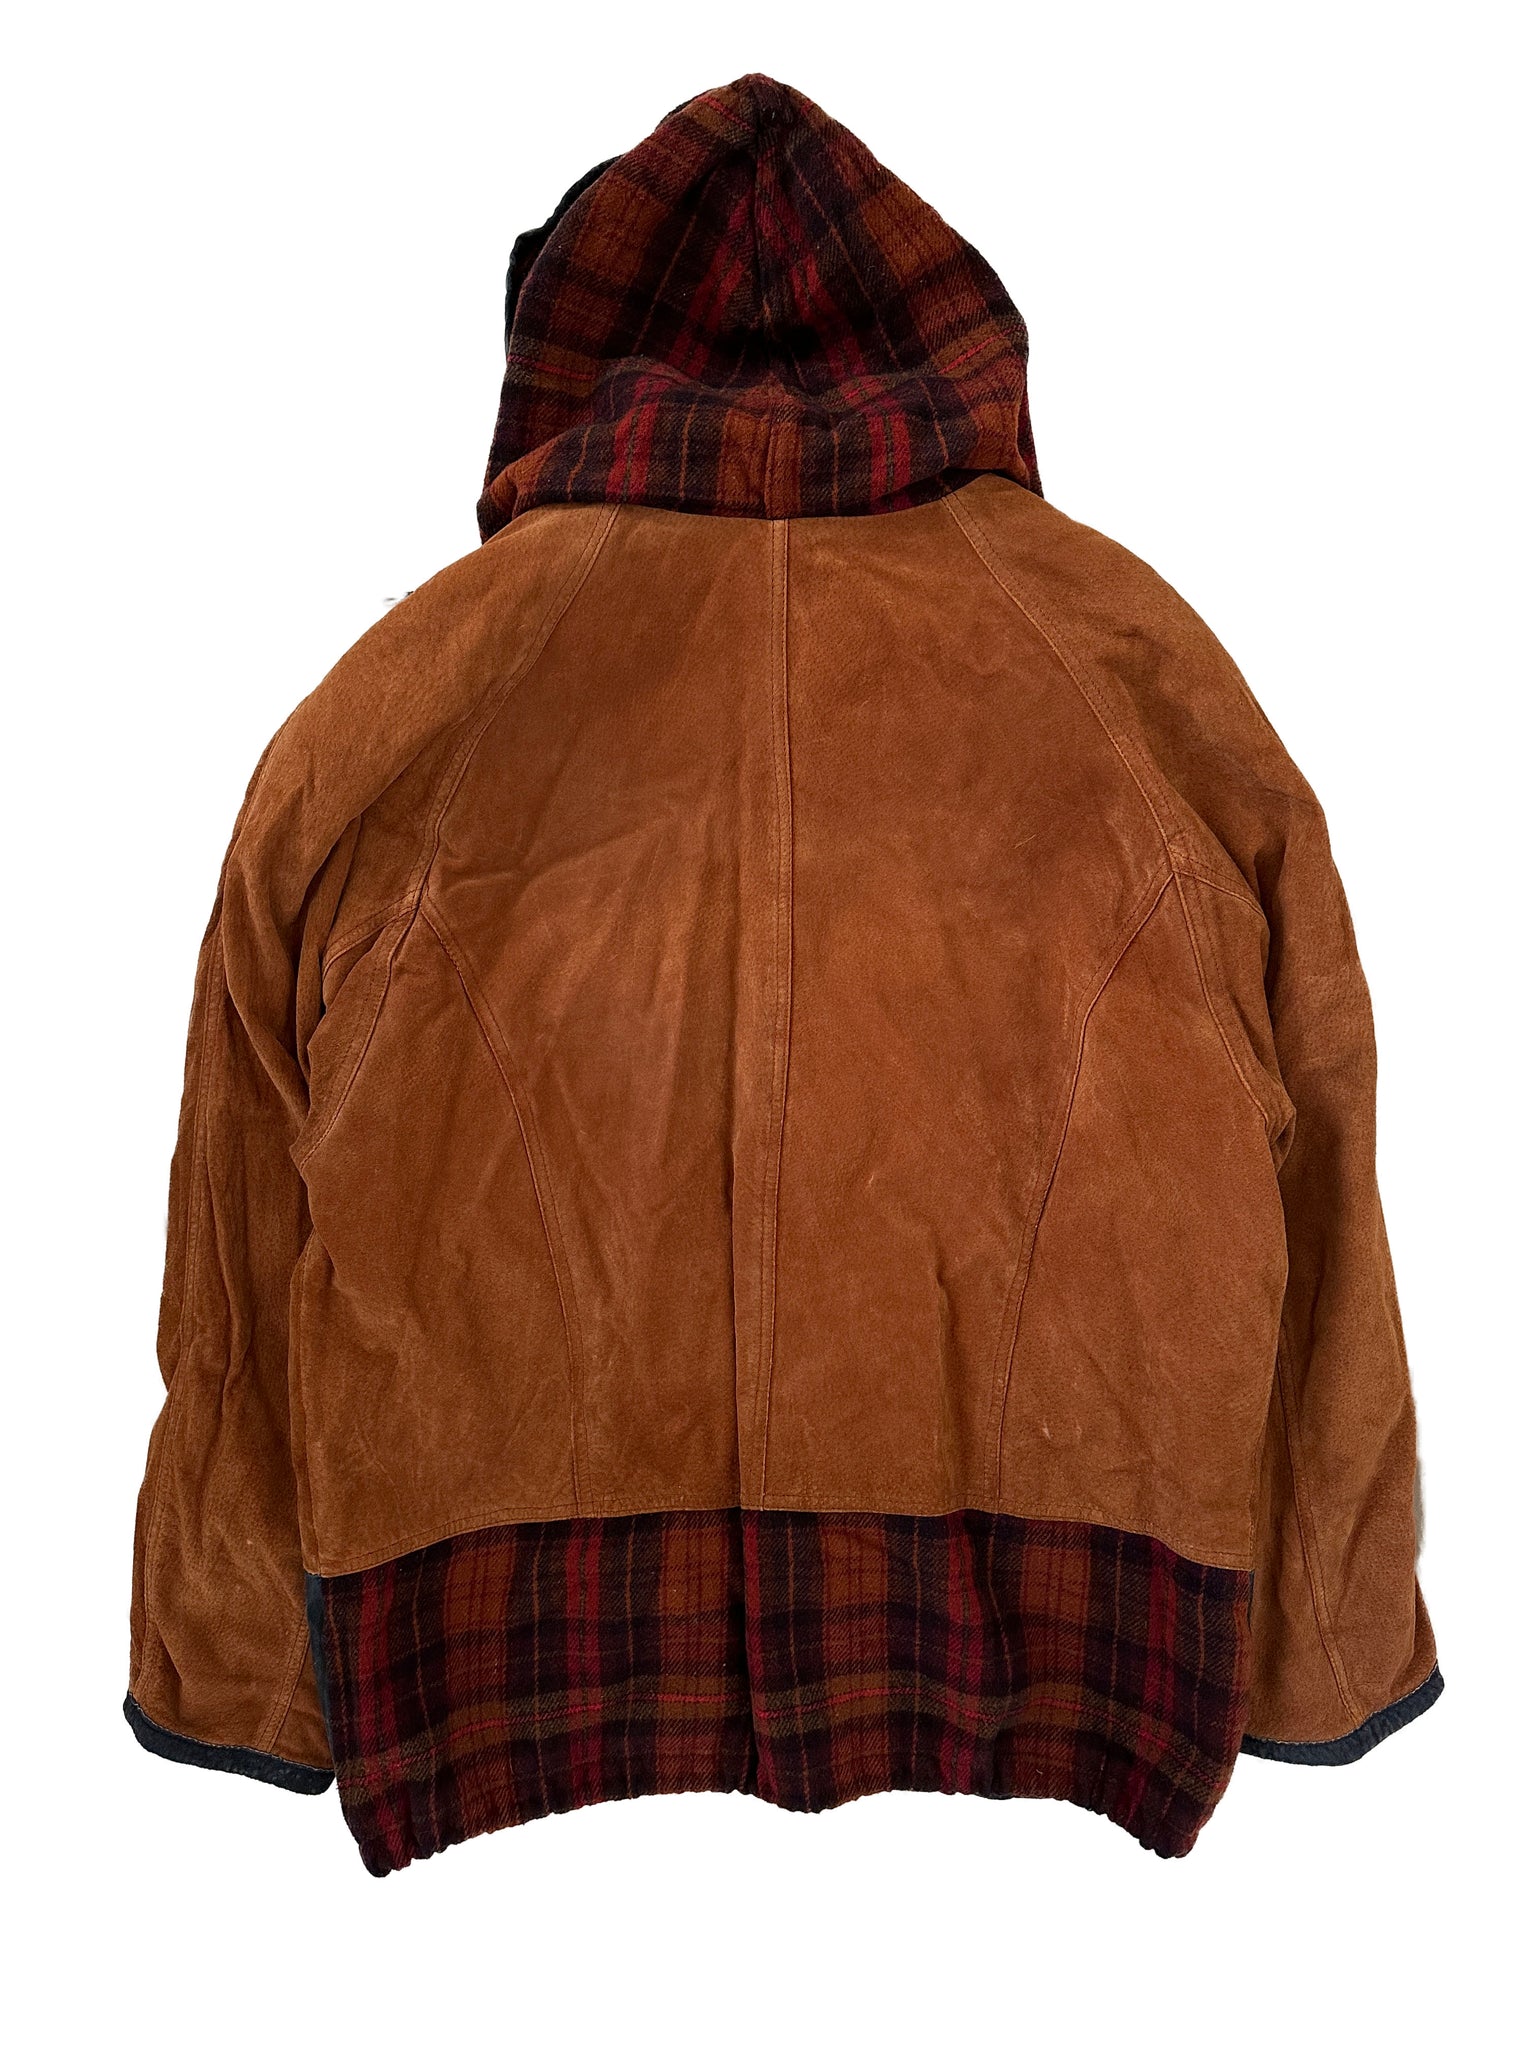 brown suede plaid jacket